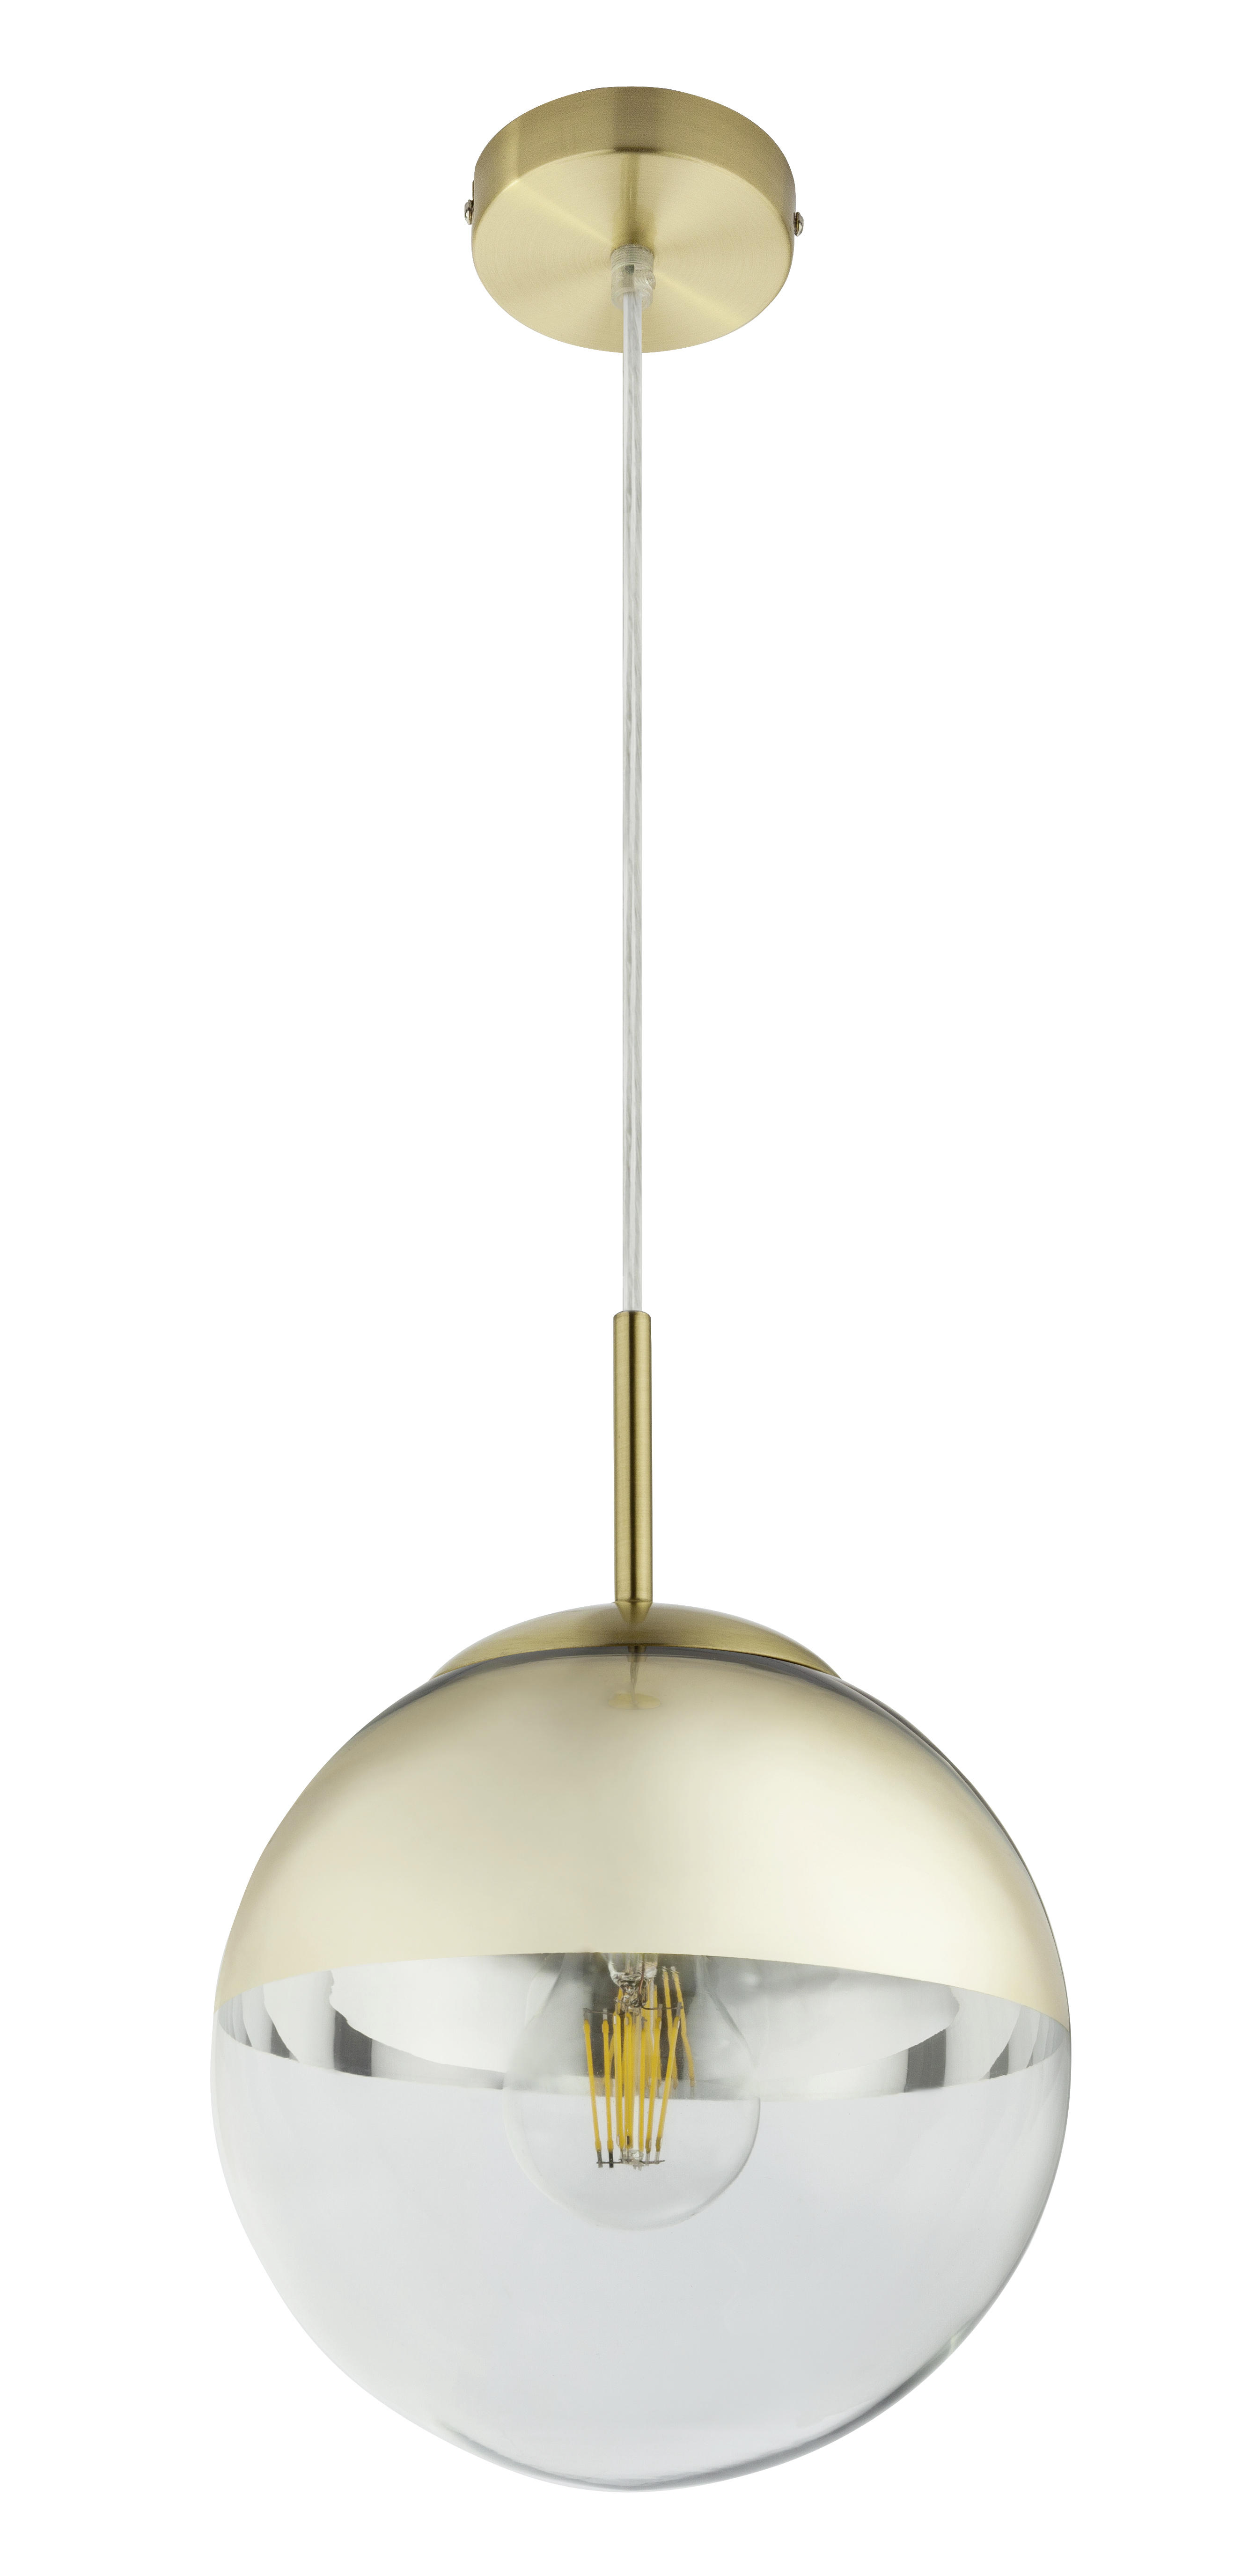 HÄNGELEUCHTE  - Transparent/Goldfarben, Design, Glas/Metall (20/120cm) - Globo